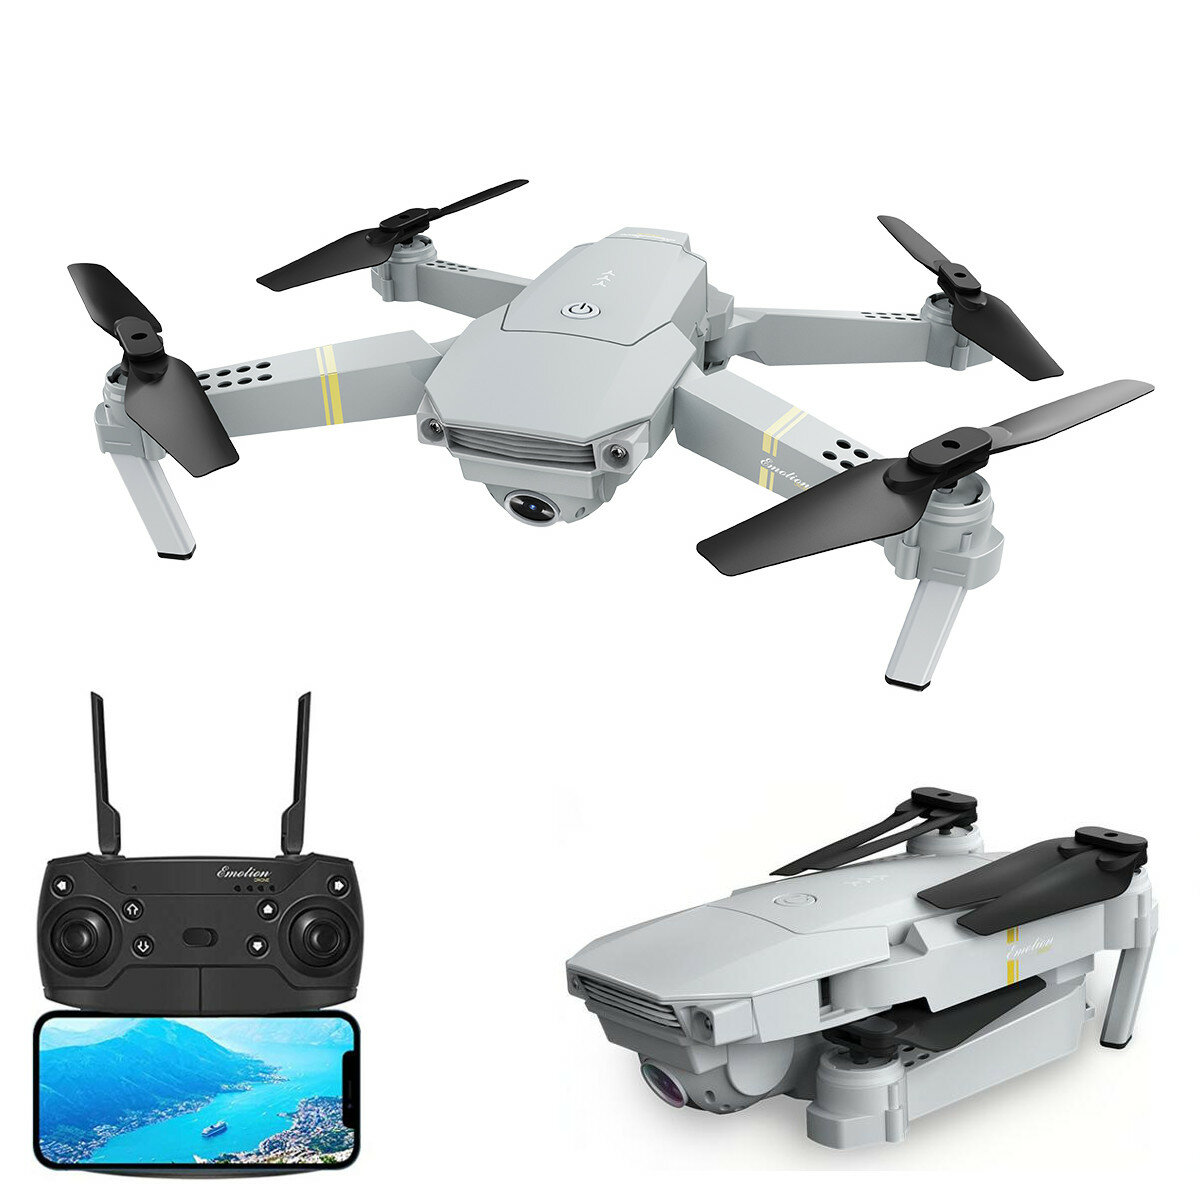 Eachine E58 Drone x pro 2.4G Wifi FPV 4K HD Camera Foldable RC Quadcopter Drone 